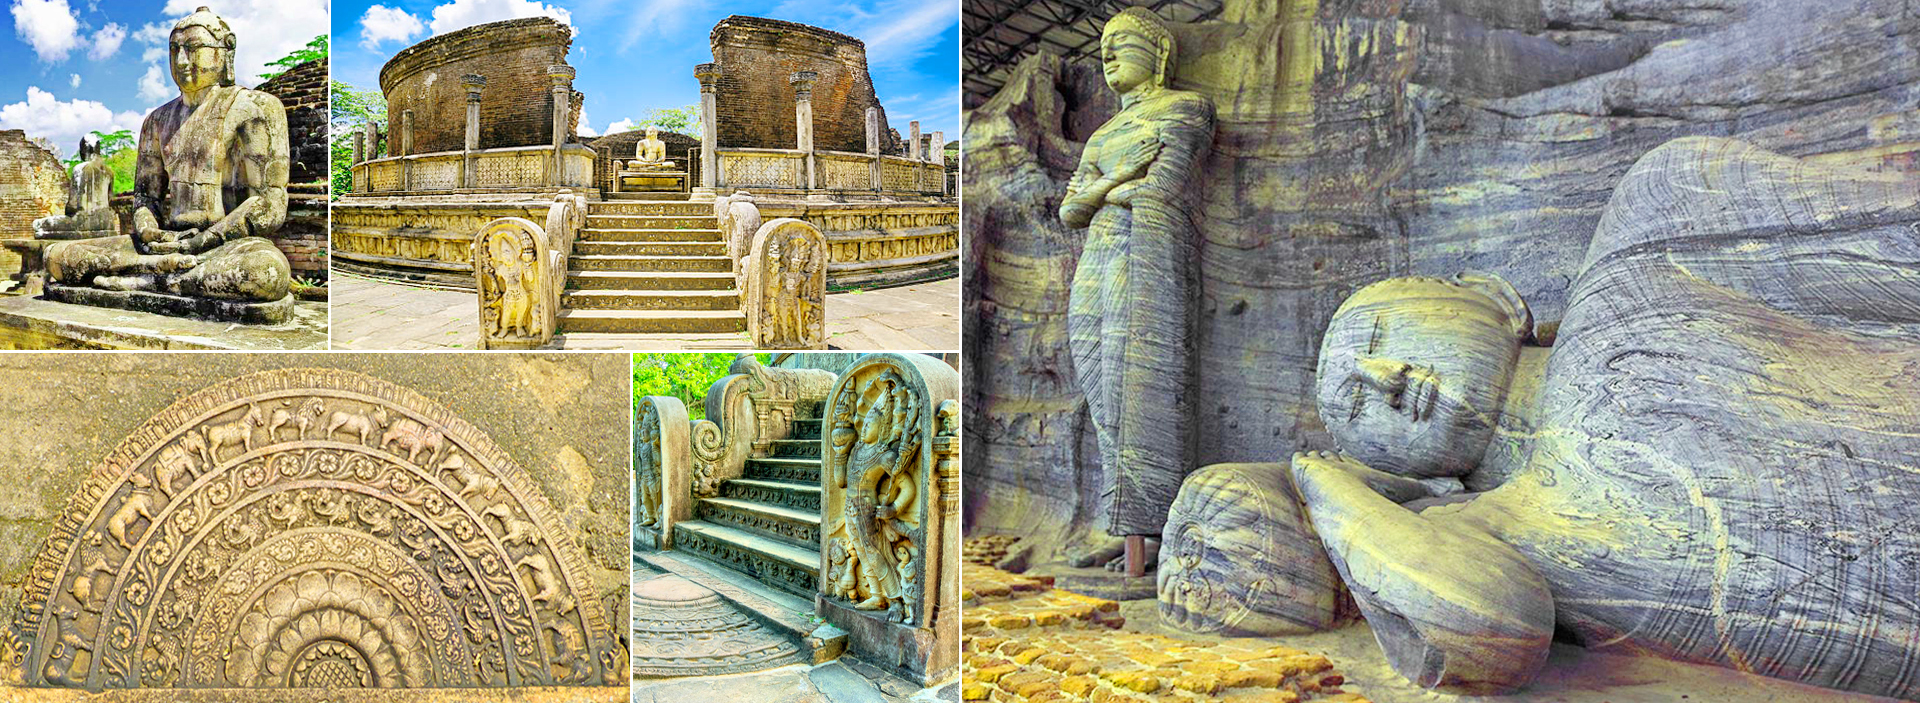 Polonnaruwa Day Tours in Sri Lanka